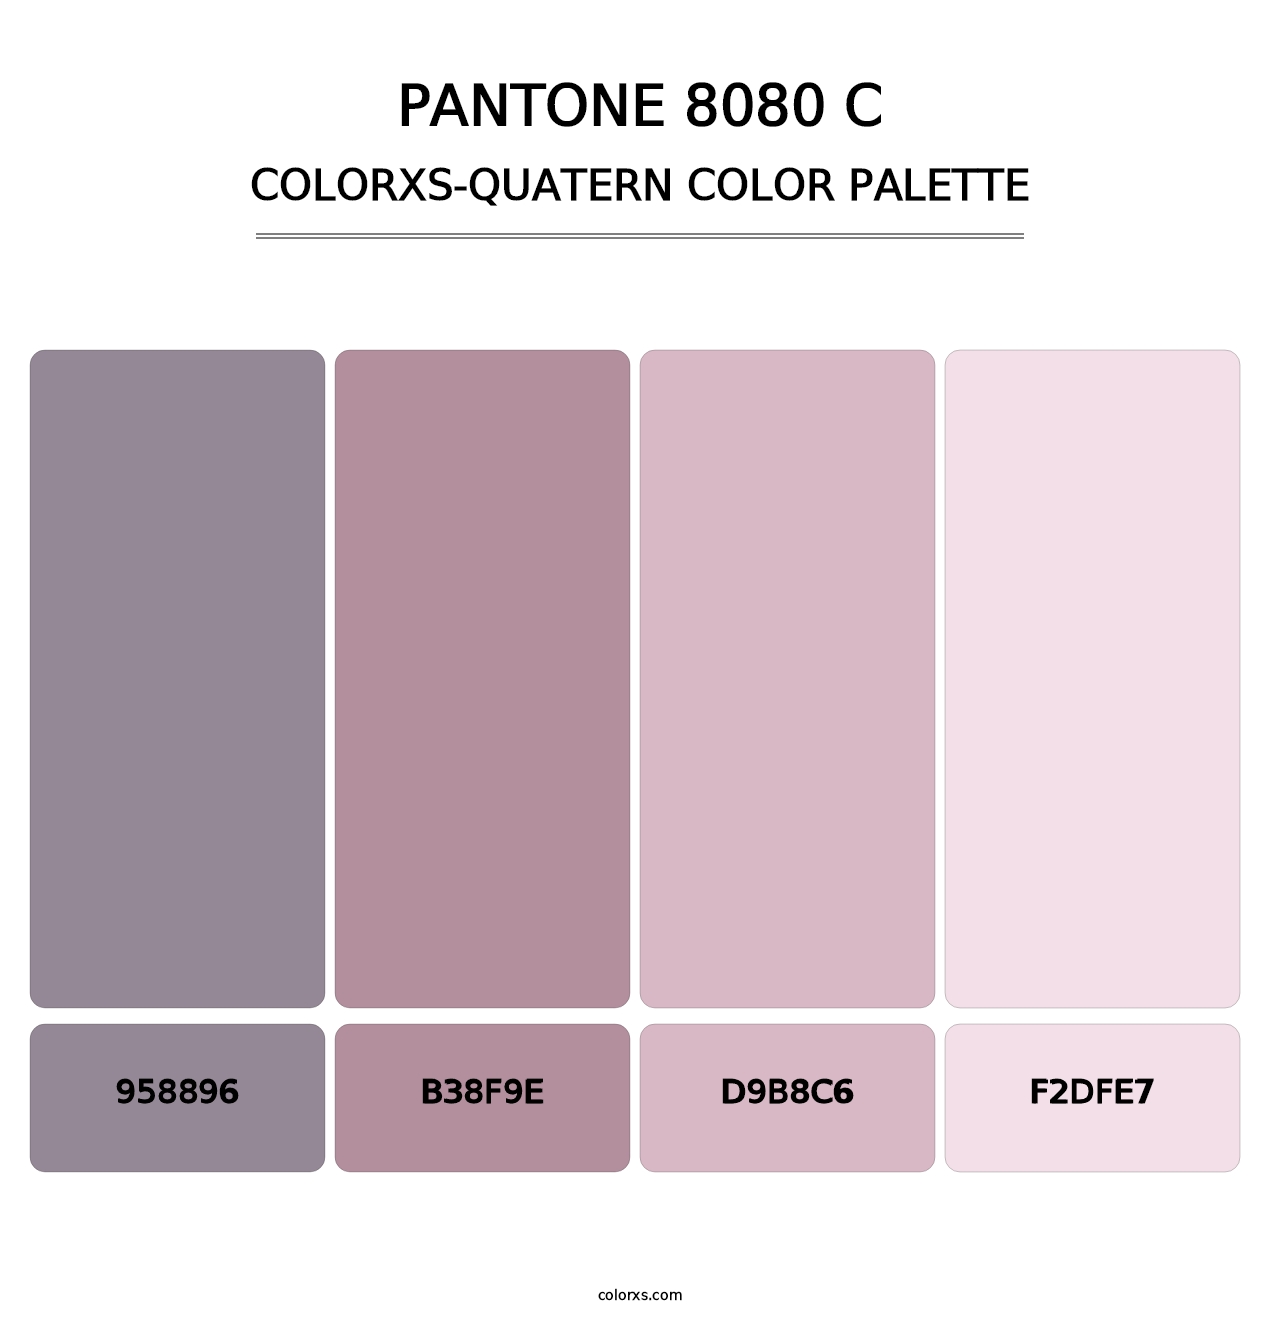 PANTONE 8080 C - Colorxs Quatern Palette